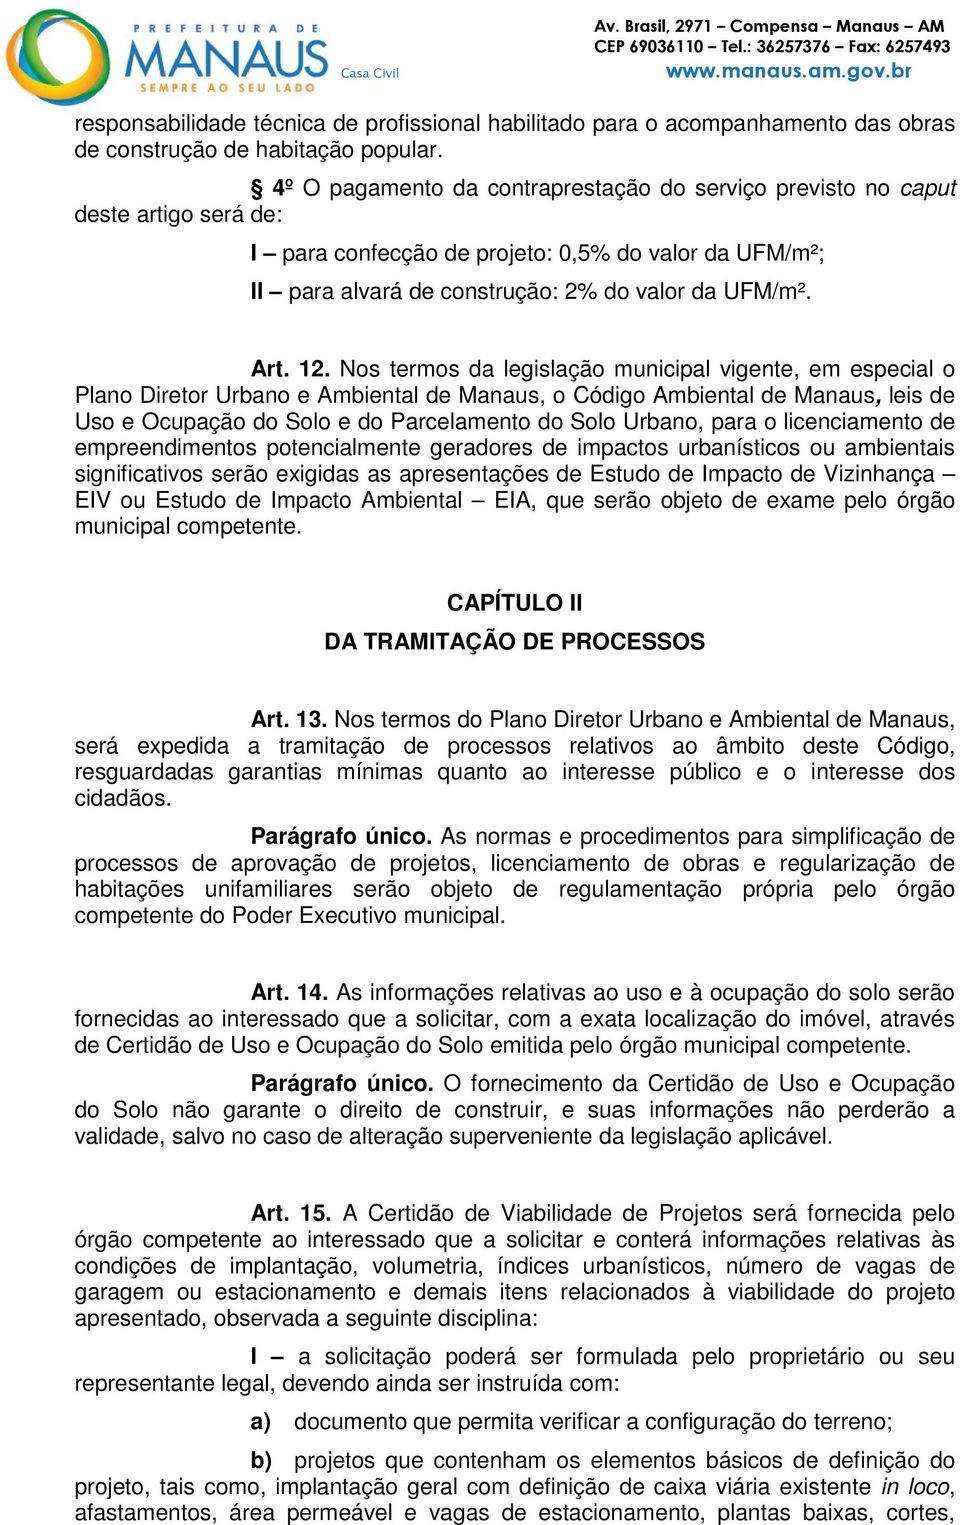 Nos termos da legislação municipal vigente, em especial o Plano Diretor Urbano e Ambiental de Manaus, o Código Ambiental de Manaus, leis de Uso e Ocupação do Solo e do Parcelamento do Solo Urbano,